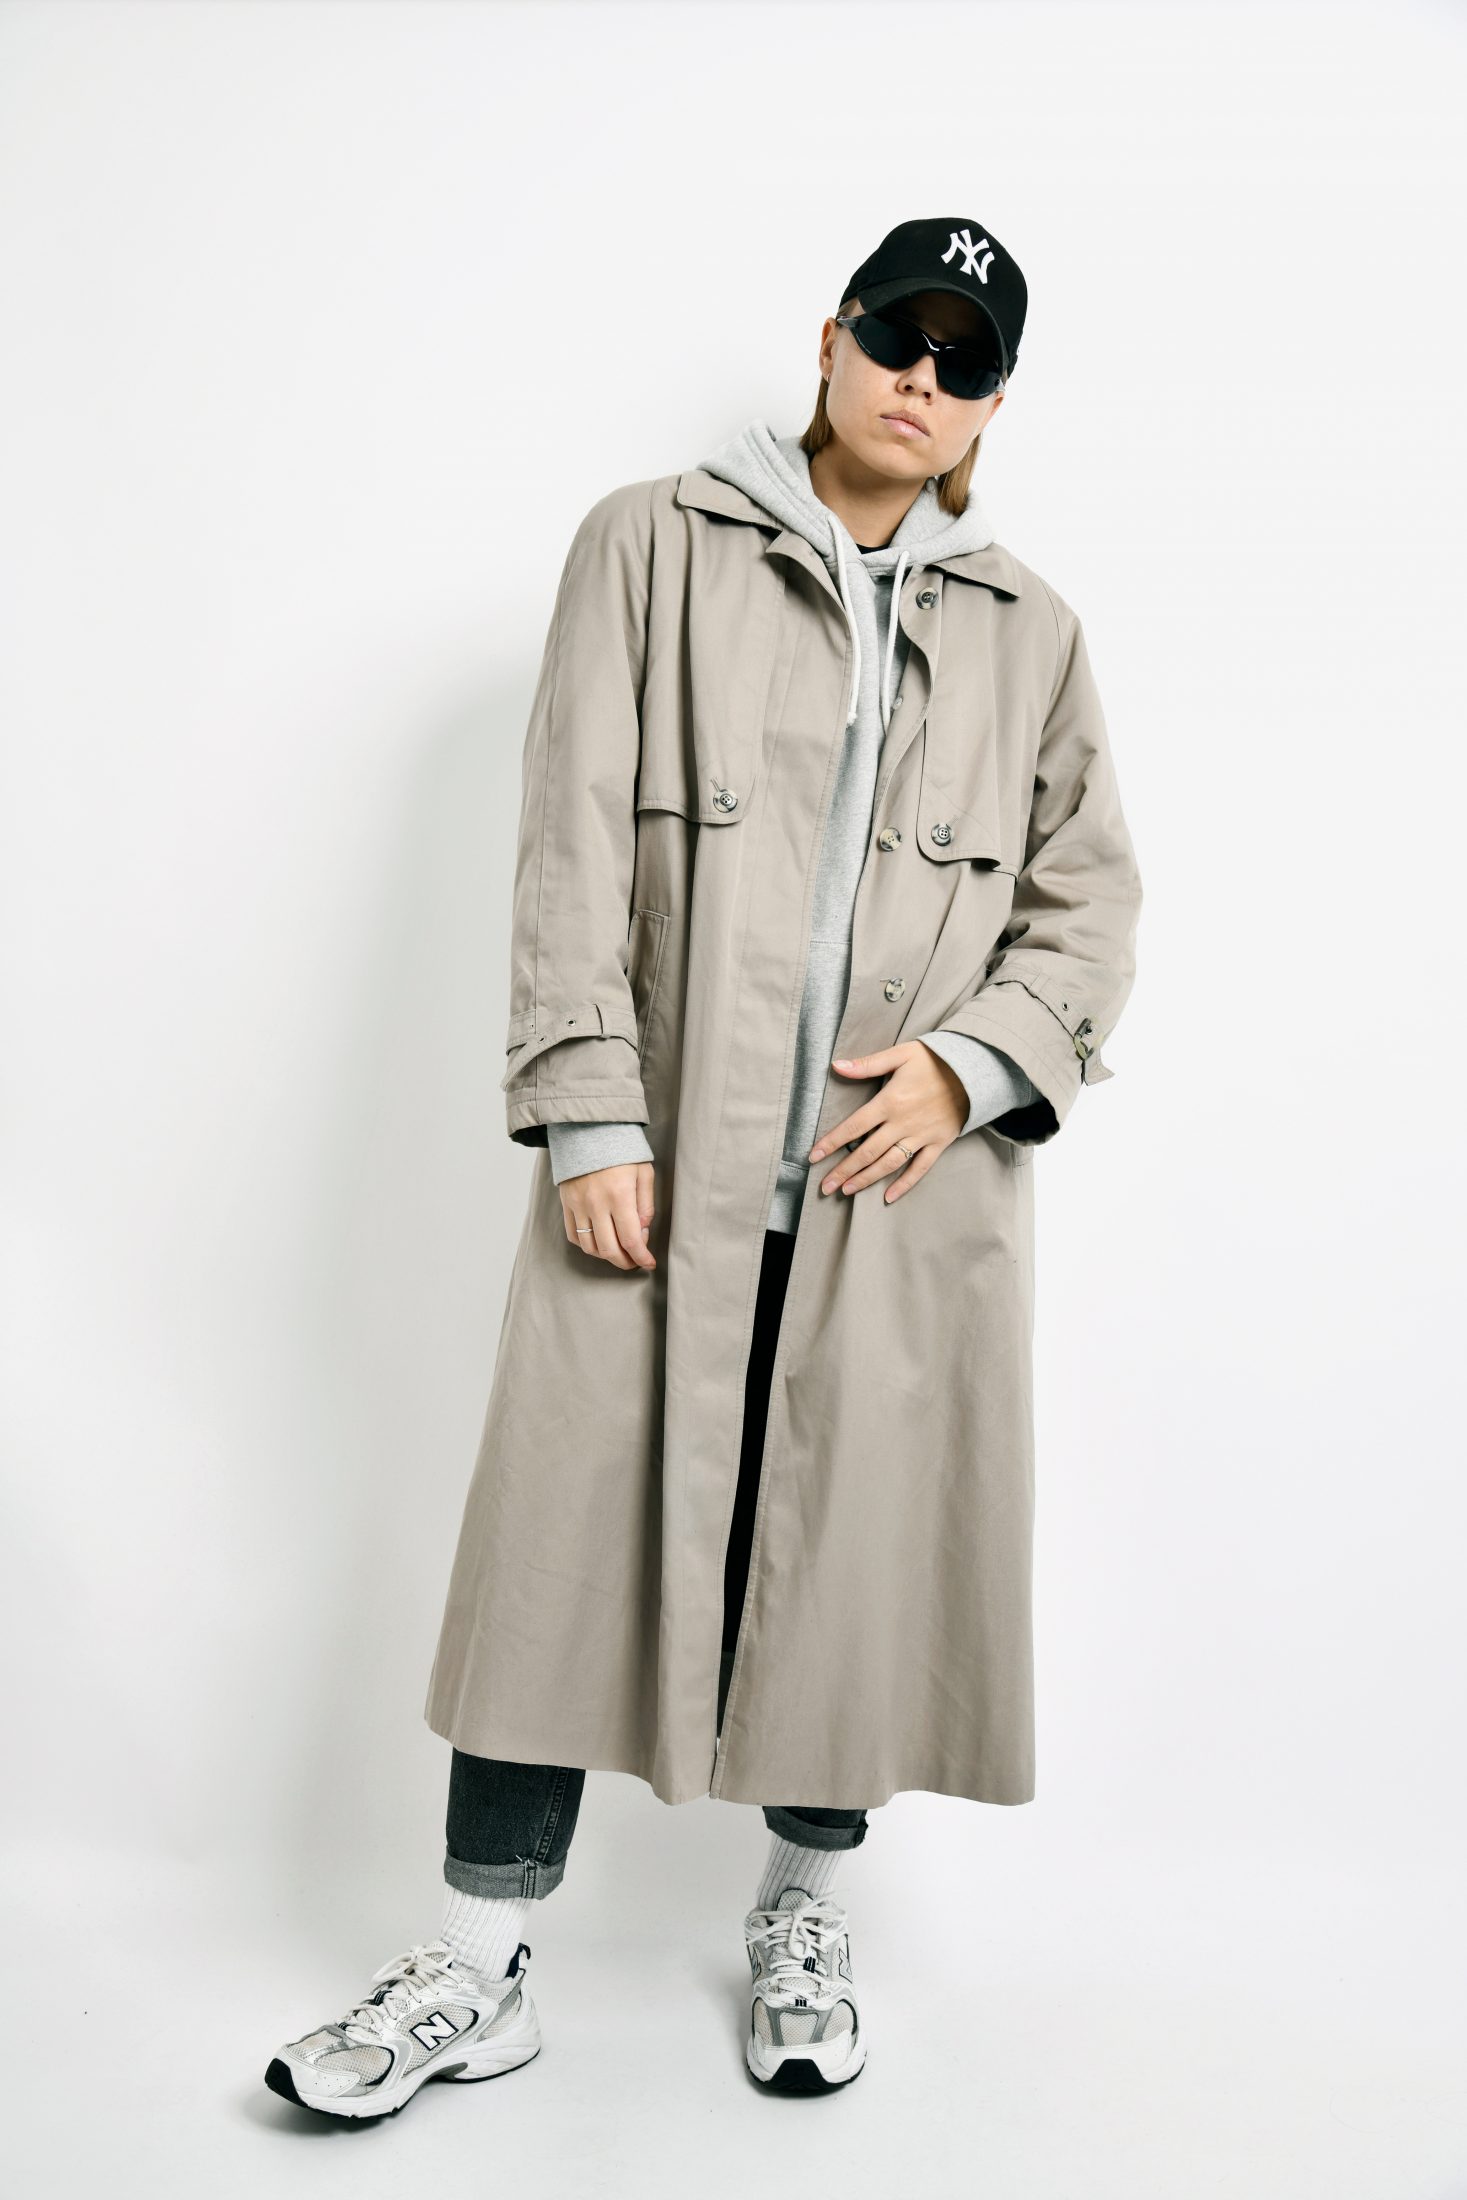 Vintage Trench Coat Men Cream Beige Overcoat Outerwear 80s